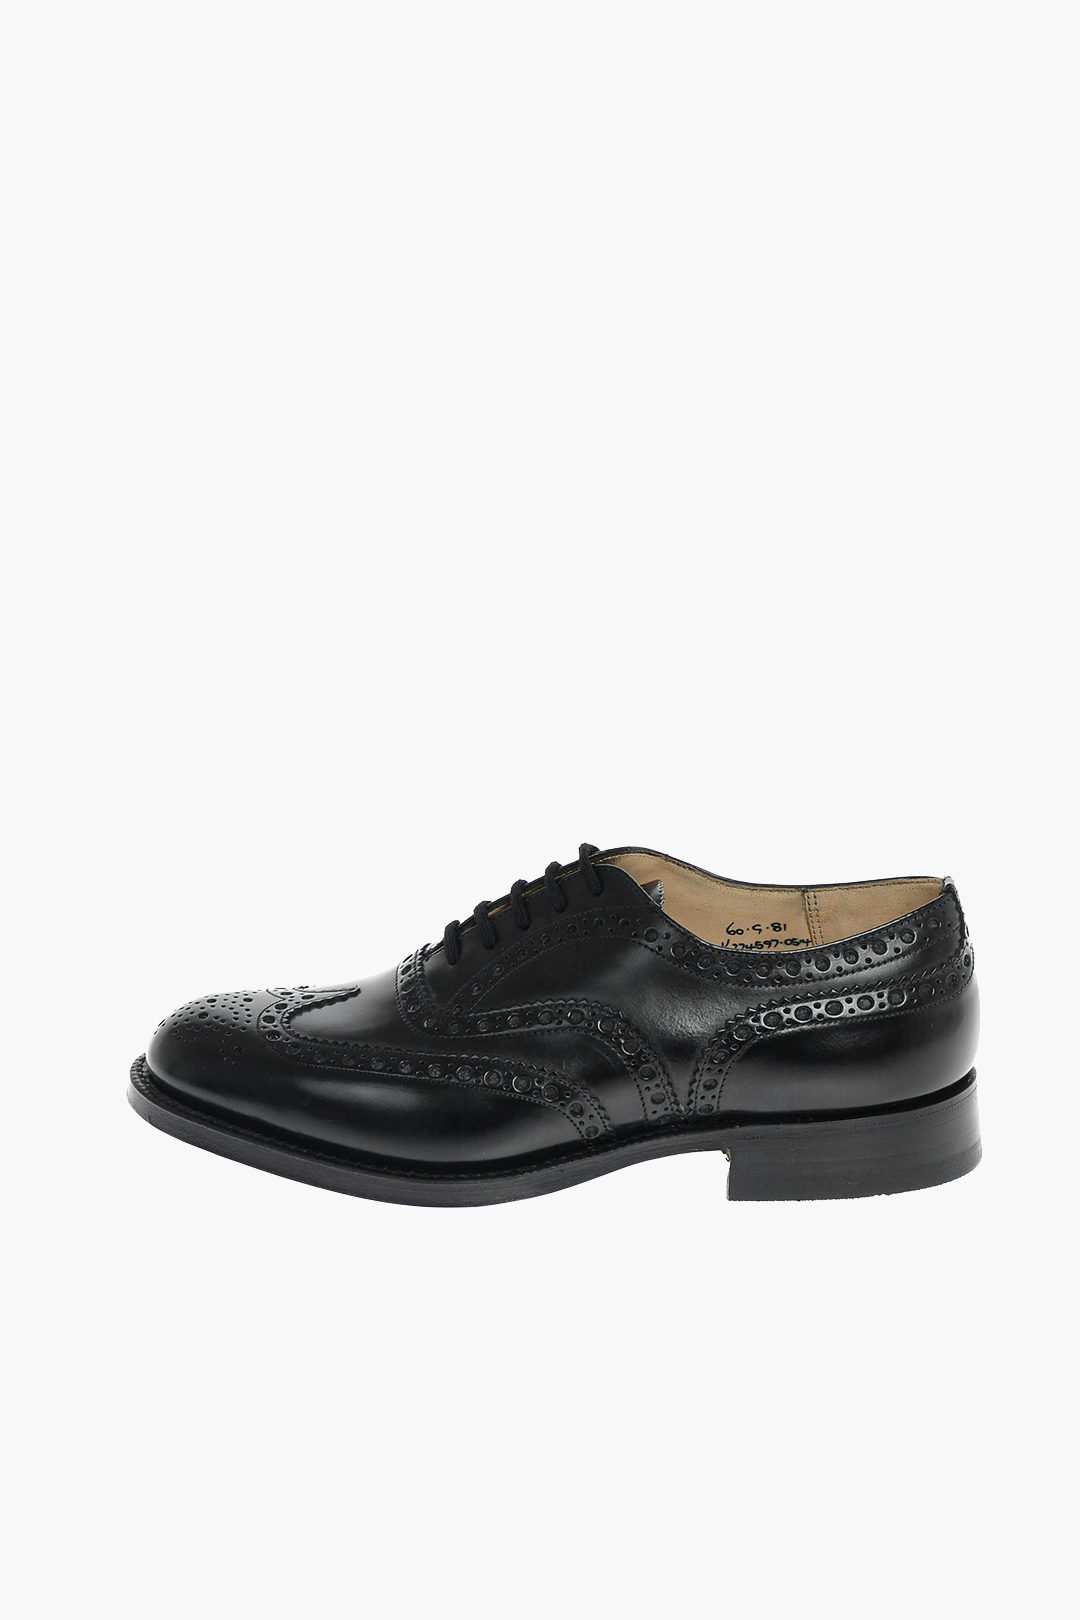 Burwood Men BWD 68 Leather Formal Shoes /Black/41 EU